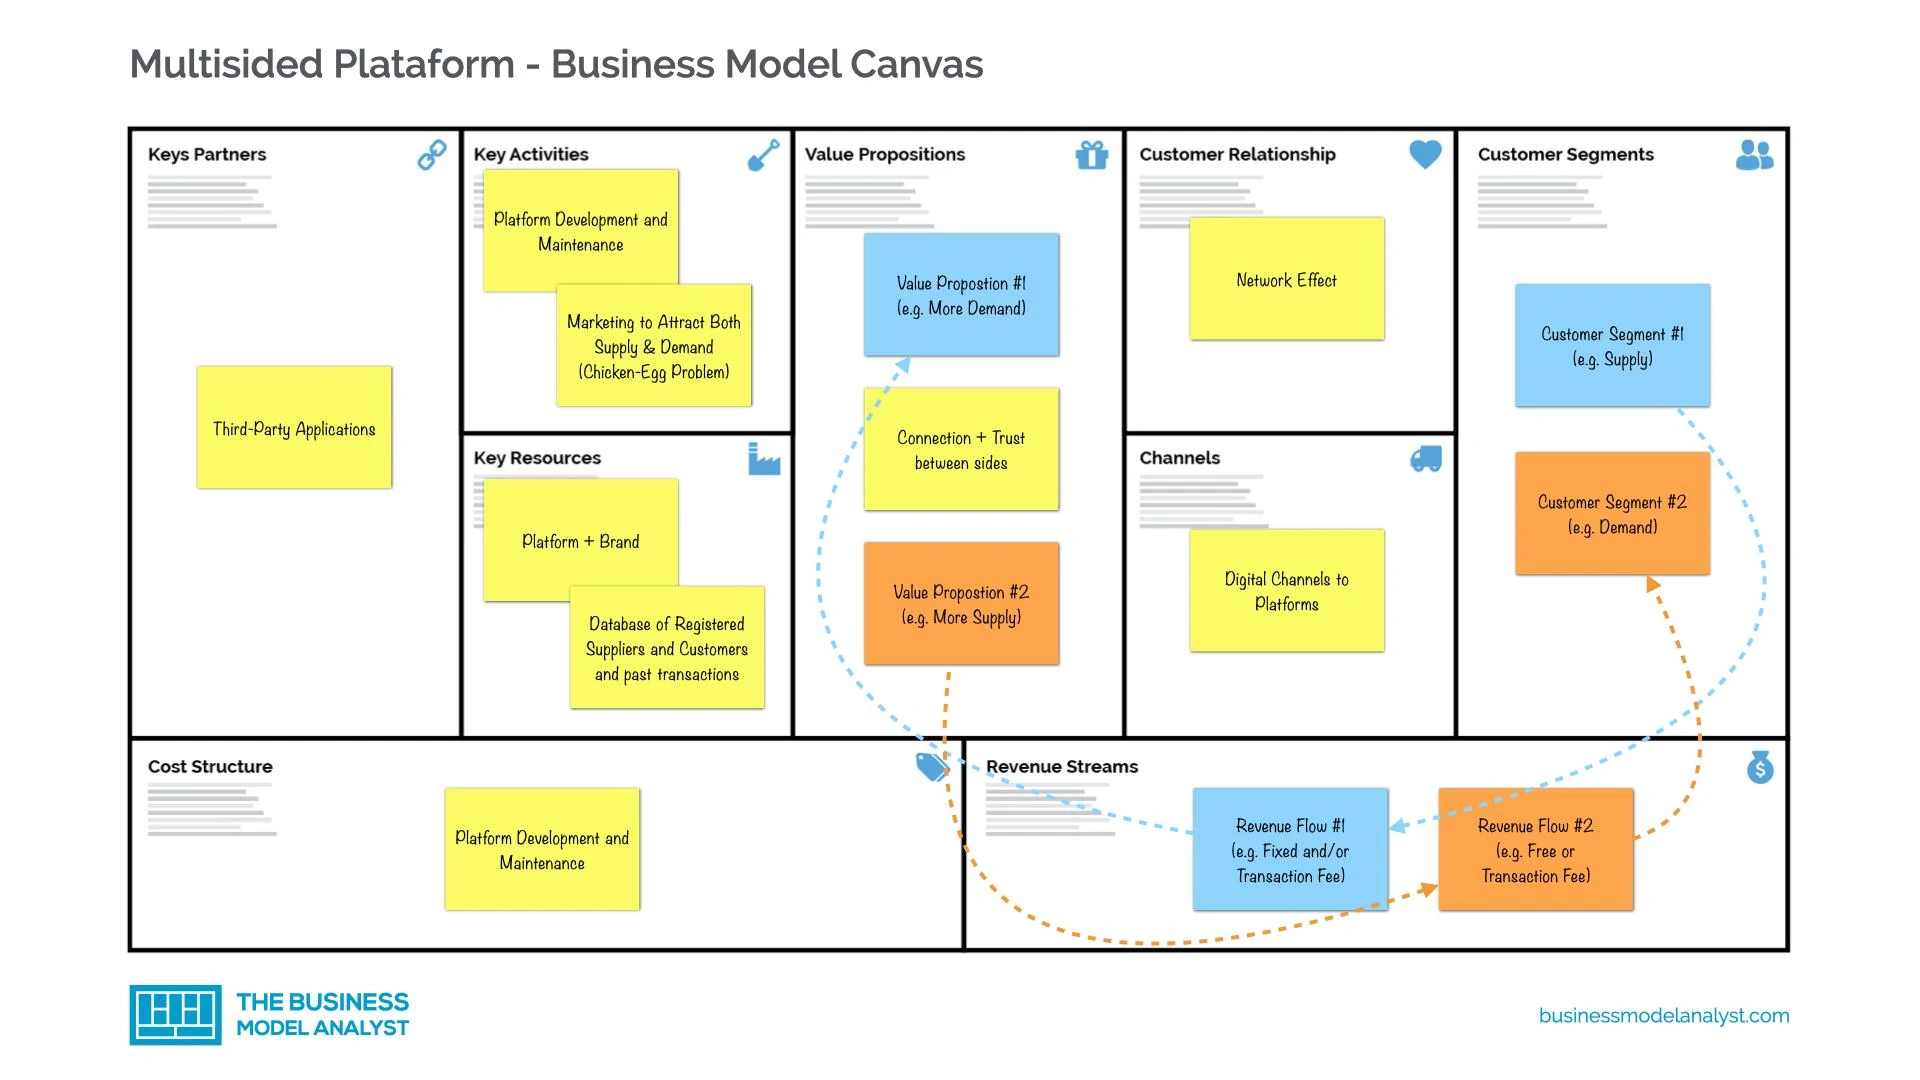 Форма бизнес модели. Остервальдер канвас. Бизнес модель канвас. Бизнес модель канвас Остервальдера. Разработка бизнес модели.